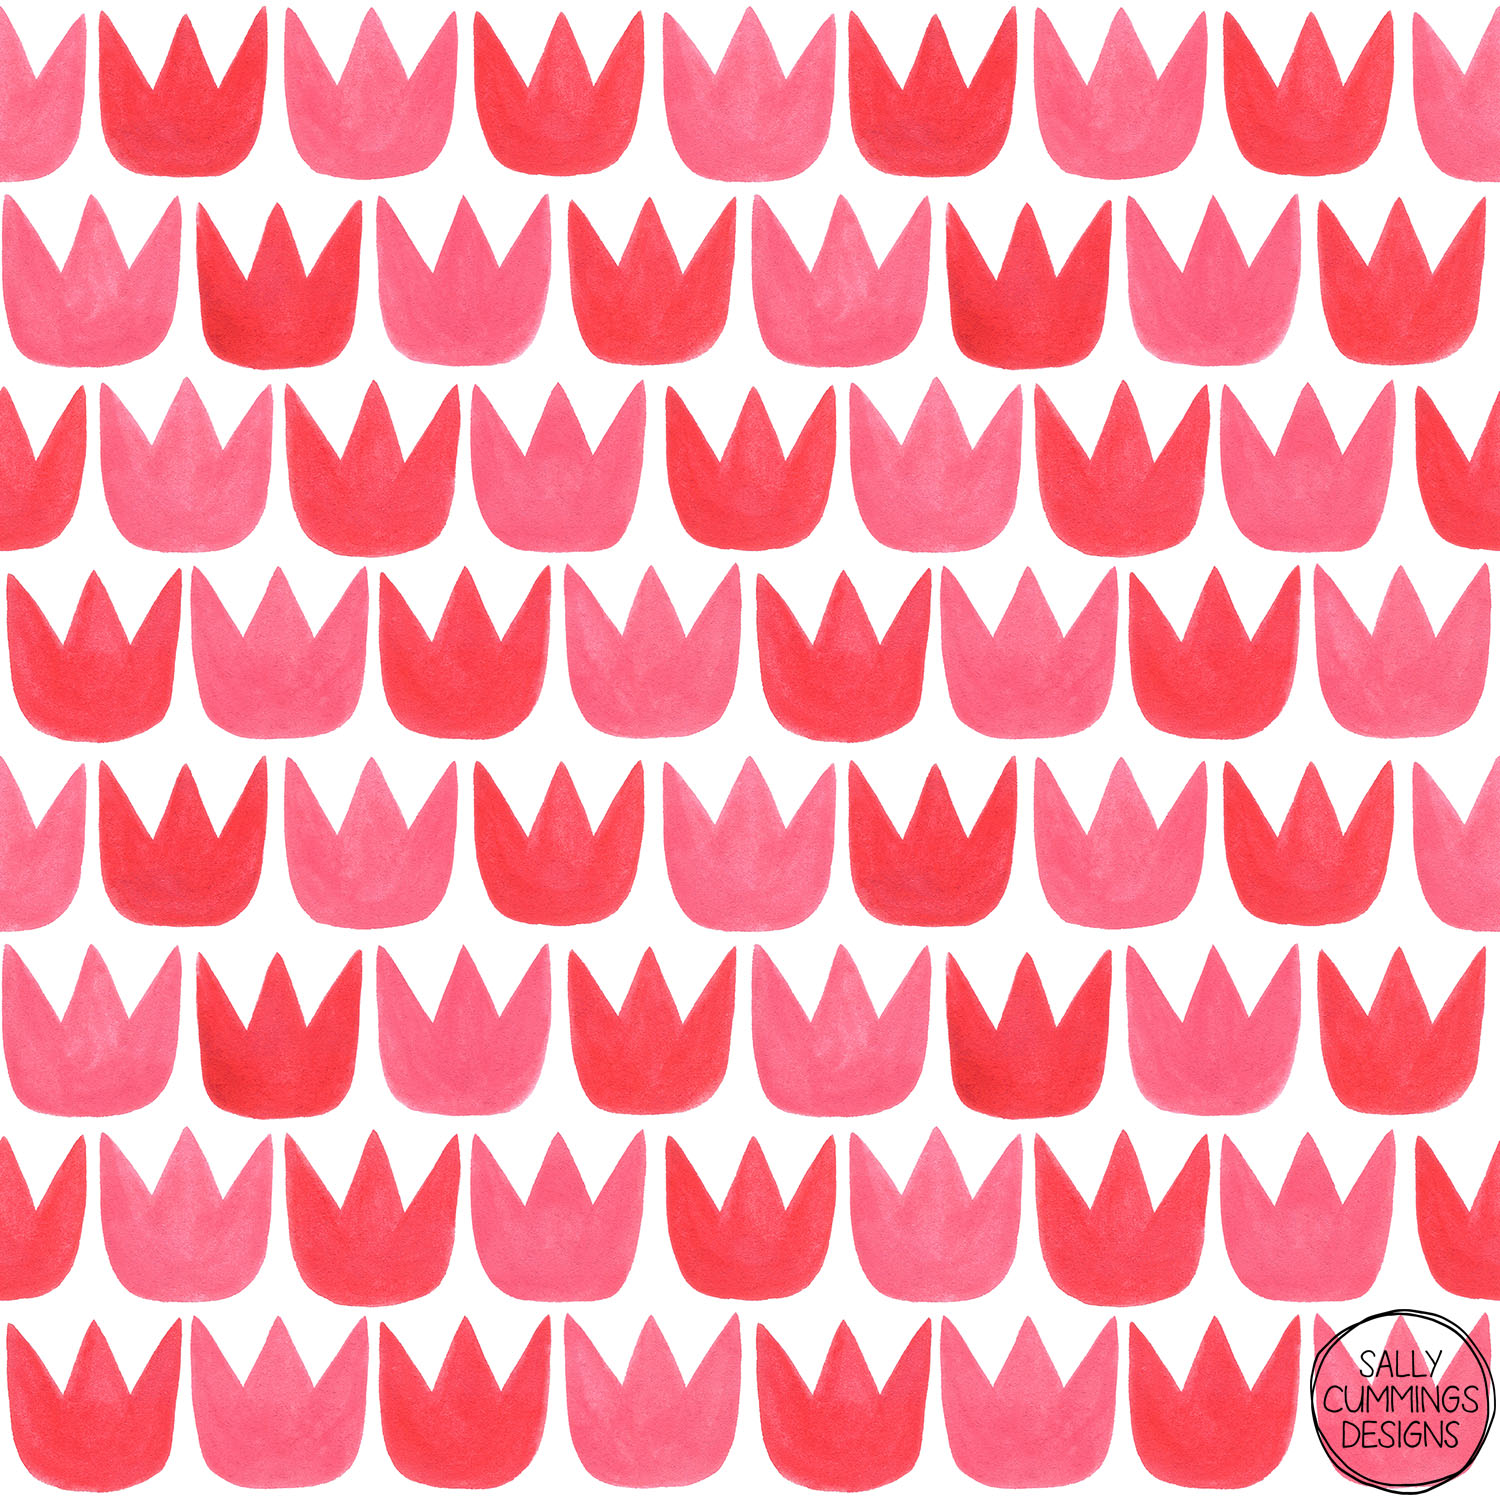 Sally Cummings Designs - Tiptoe Tulips Pattern